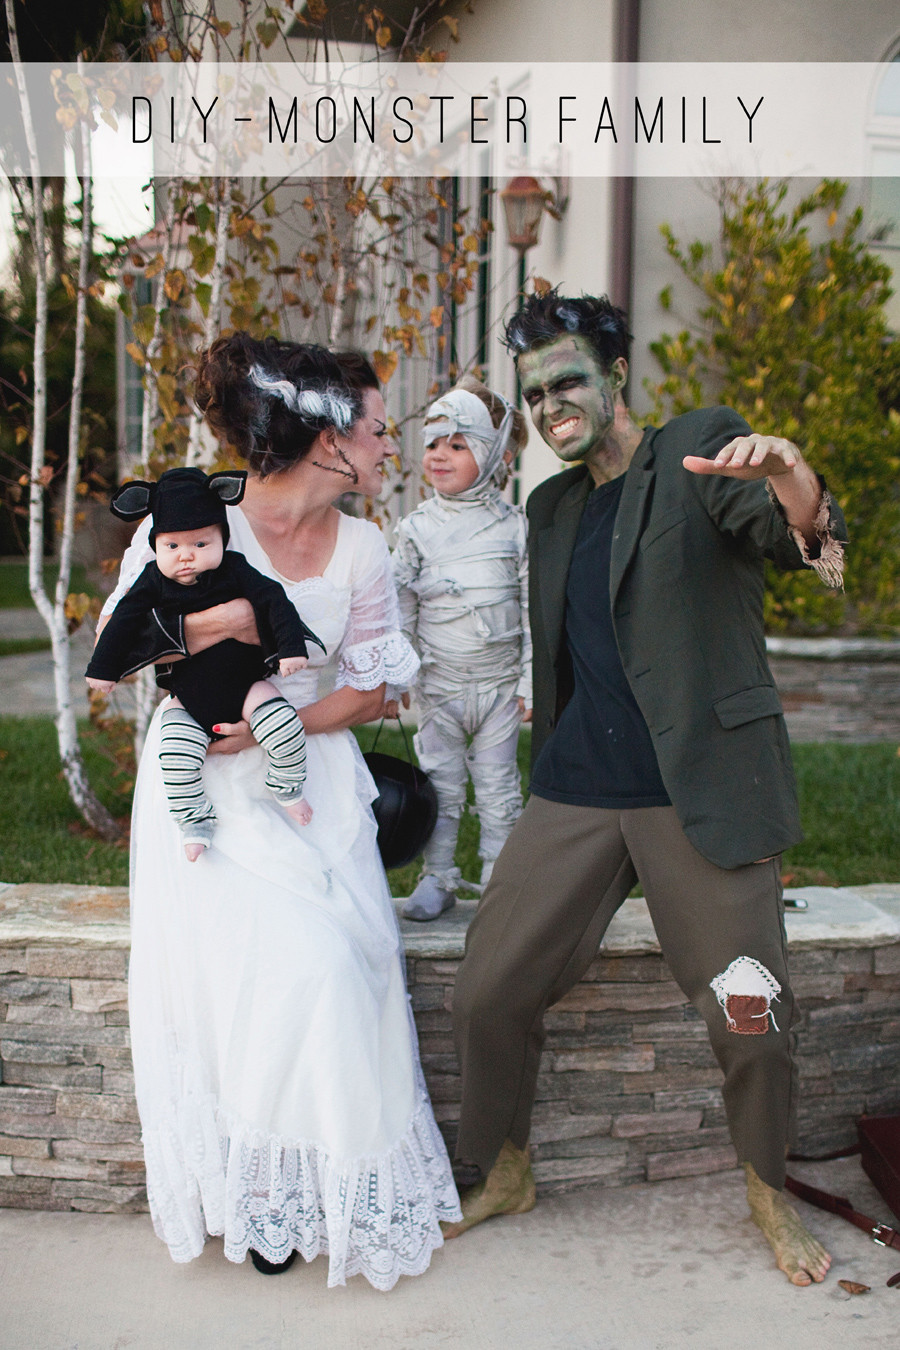 Frankenstein Costume DIY
 TELL MONSTER FAMILY COSTUME DIY Tell Love and PartyTell